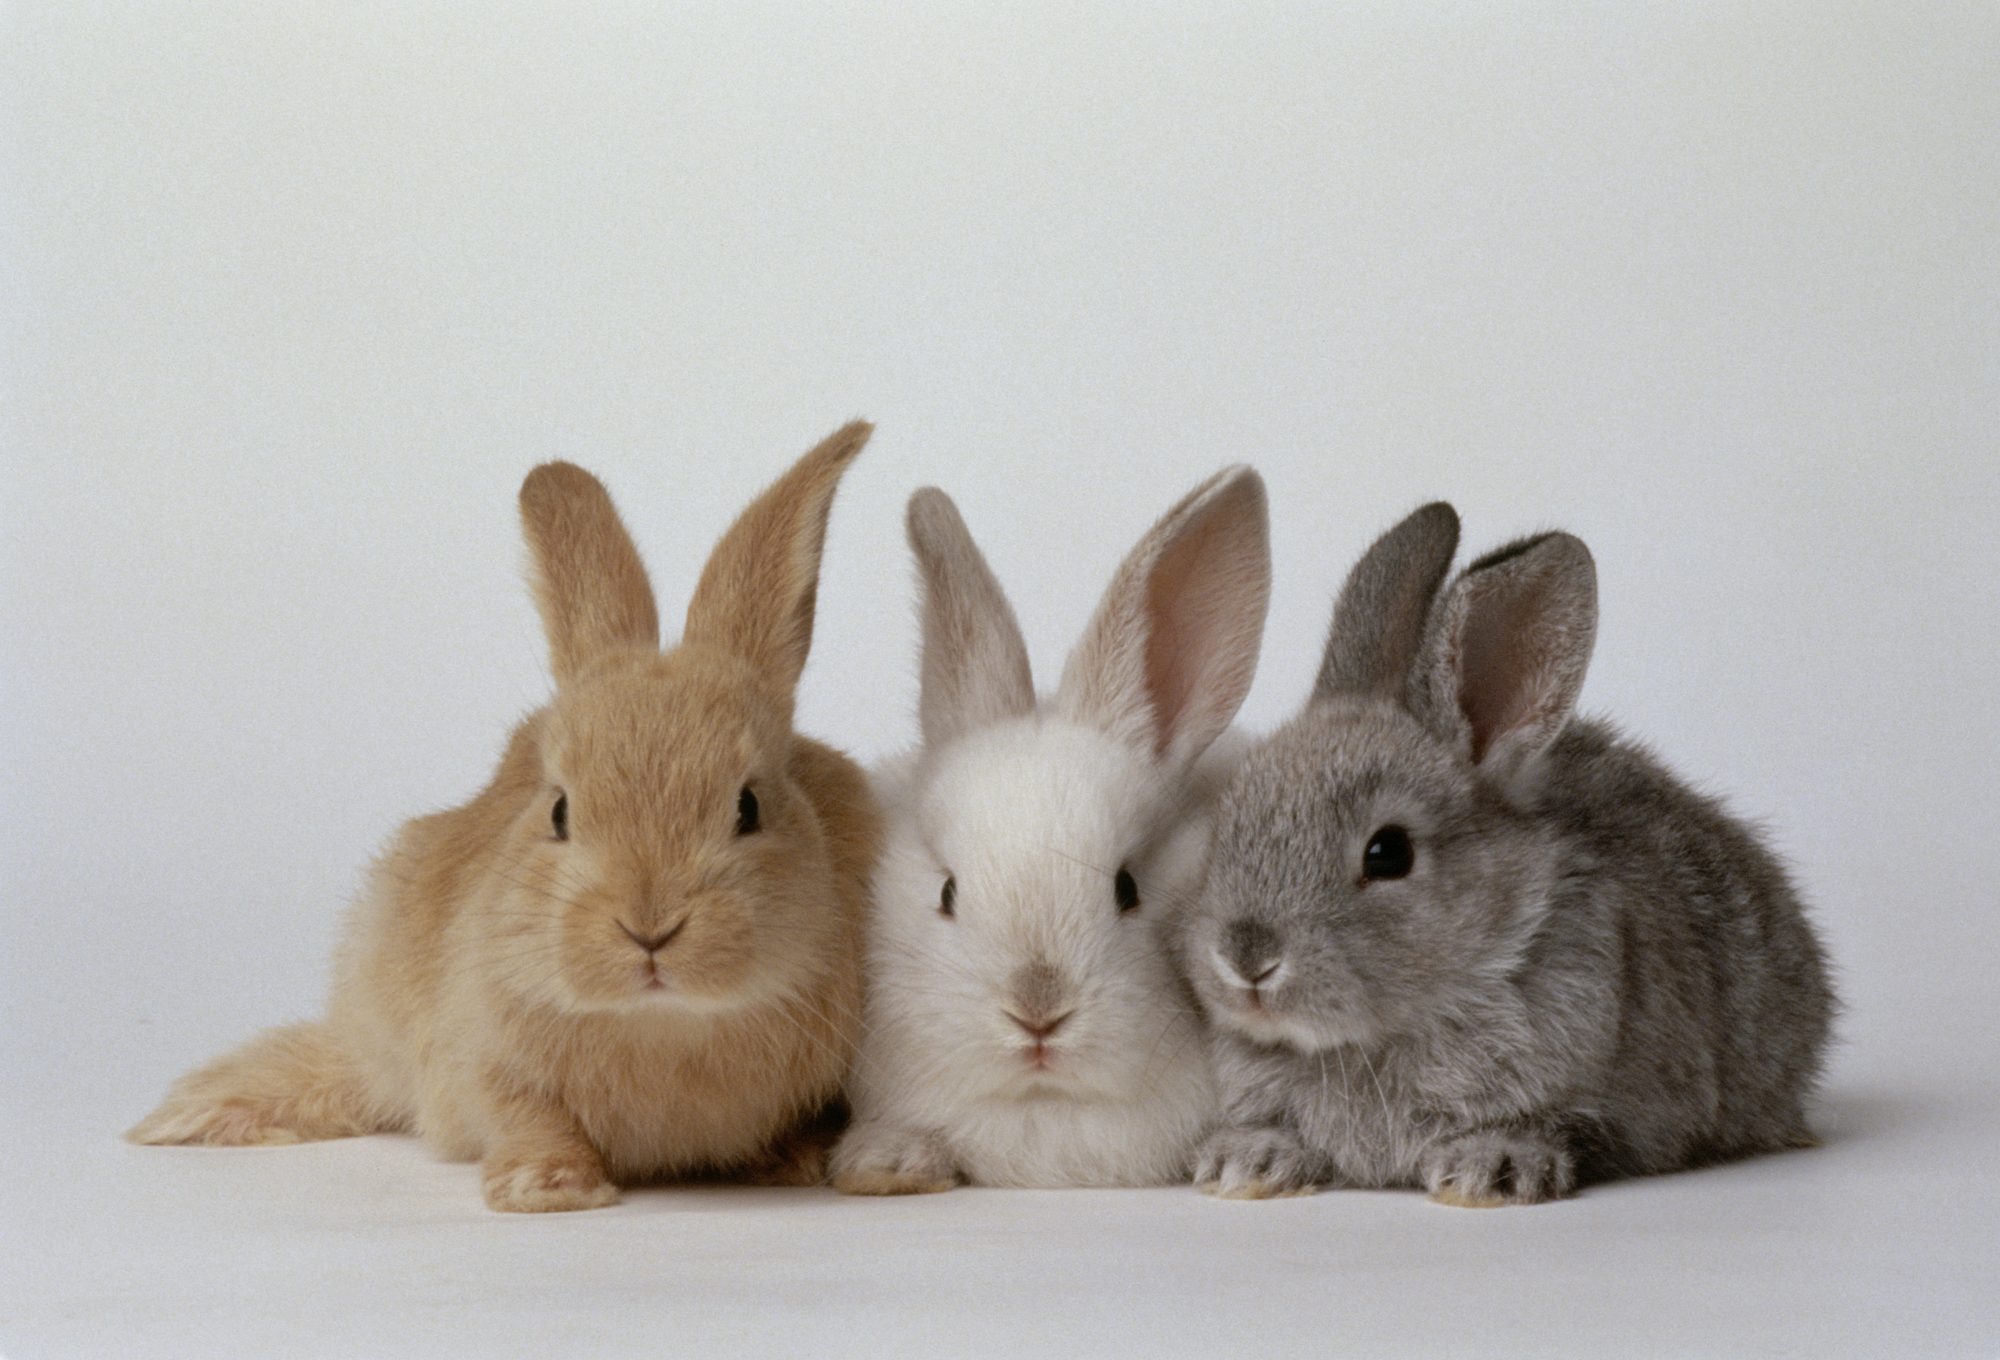 Продажа кроликов остановлена в британской сети магазинов Pets at Home